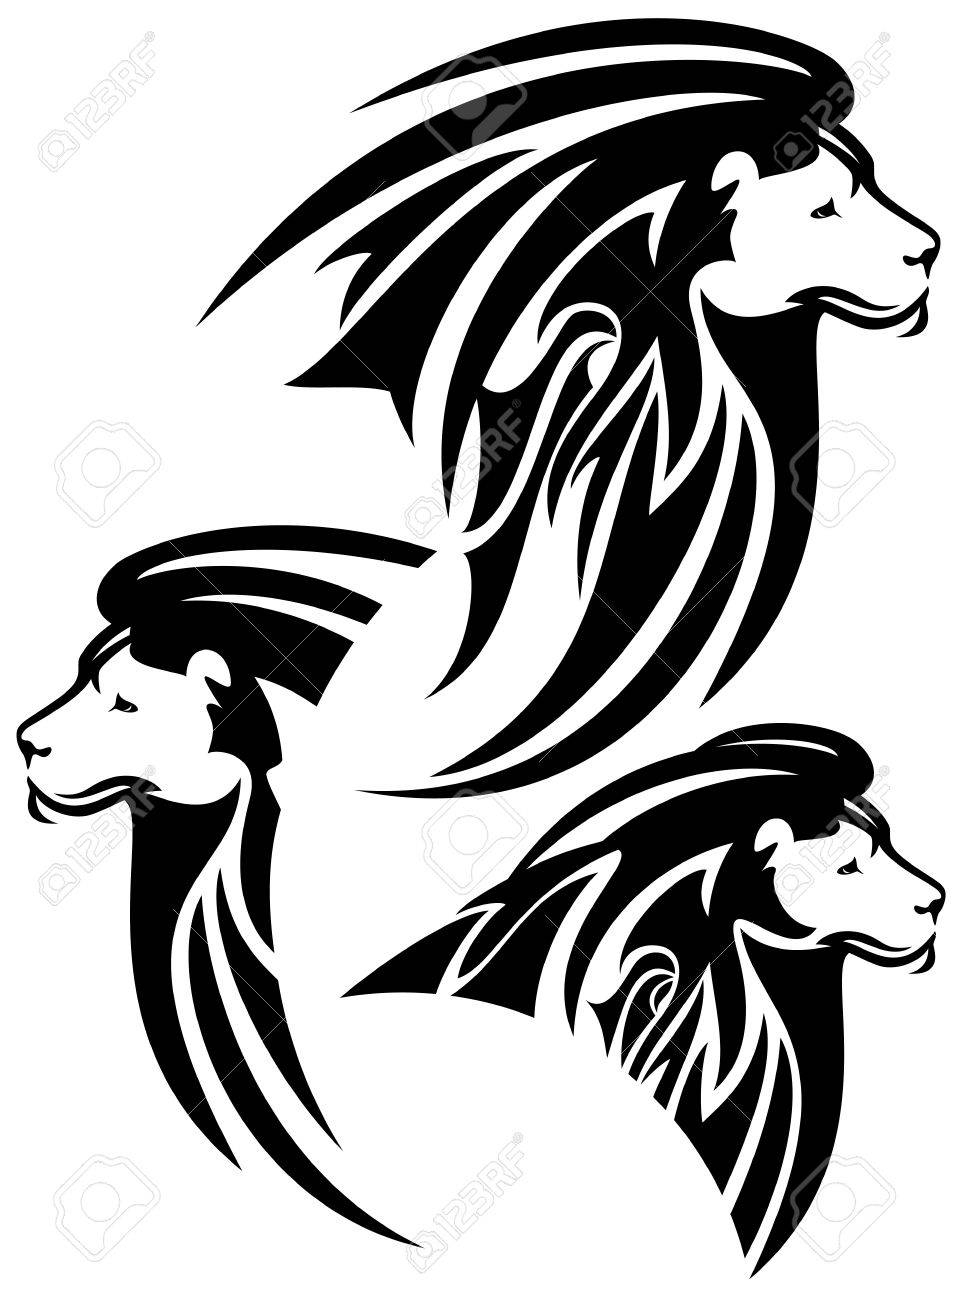 Lion Clipart Noir Et Blanc encequiconcerne Dessin Noir Et Blanc Animaux